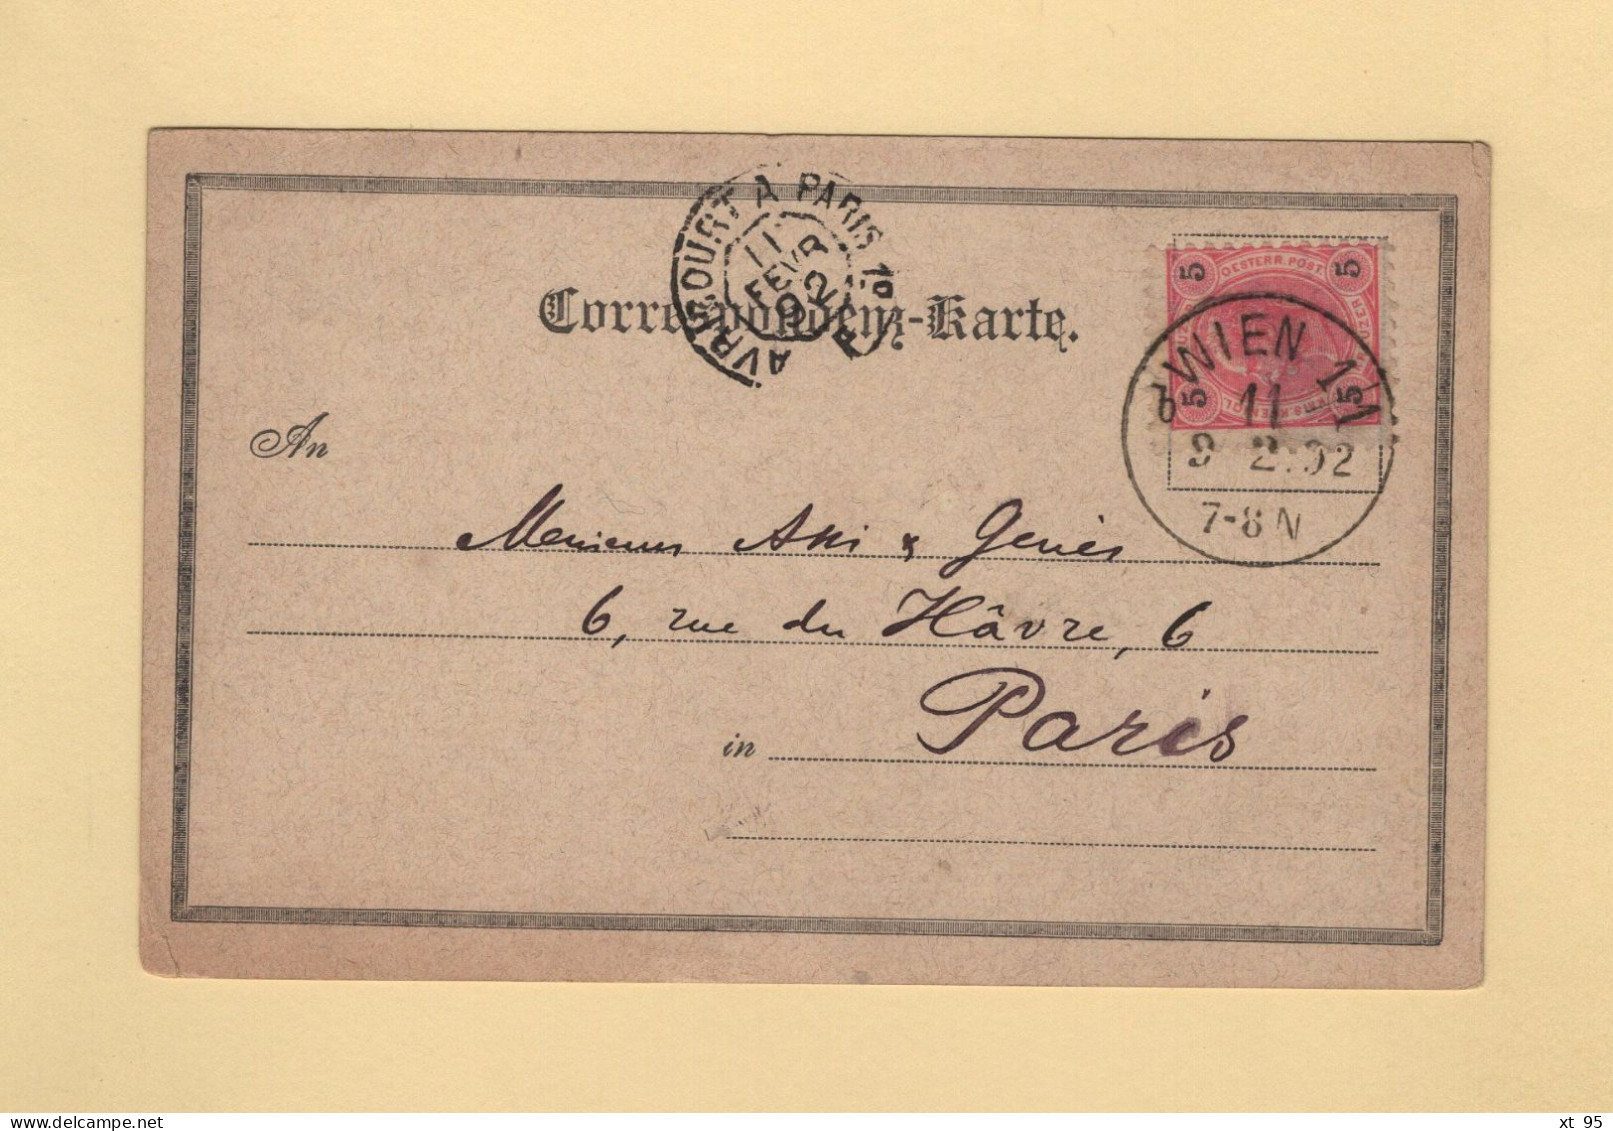 Autriche - Wien 1/1 - 1892 - Destination France - Entree Ambulant Avricourt A Paris 1° - Briefe U. Dokumente